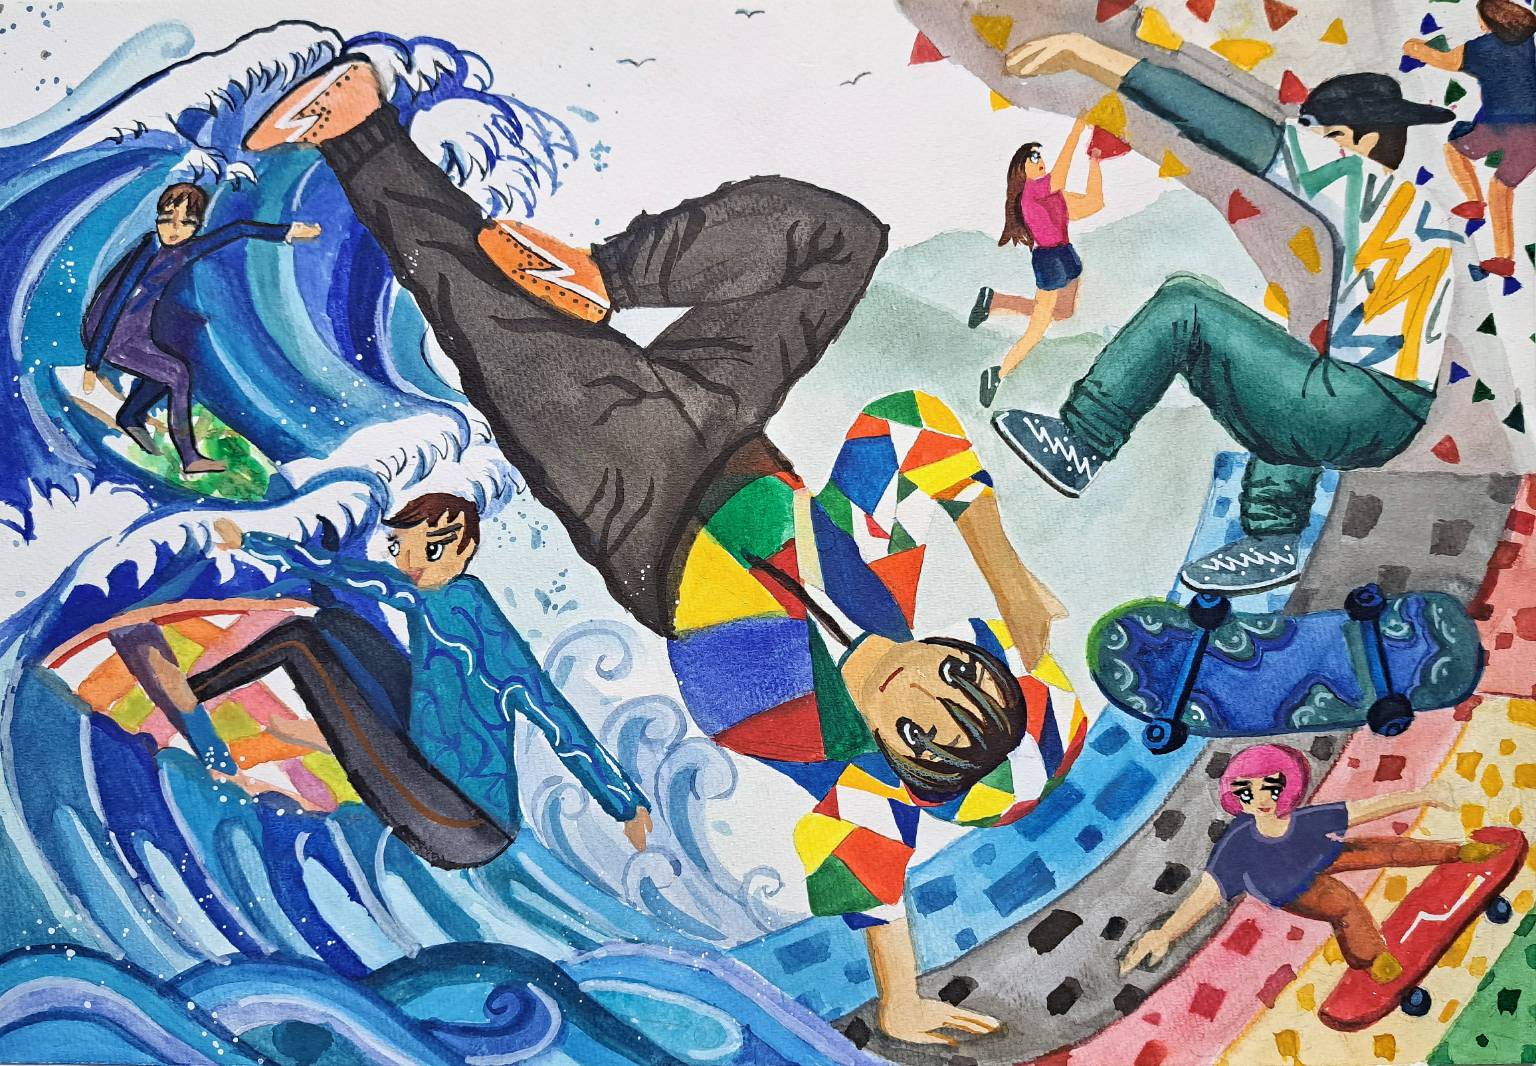 方晶霈「翻开新世纪篇章」以特殊的倒立构图和日本浮世绘海浪的概念来表现奥运新的竞赛项目：霹雳舞、攀岩、冲浪、滑板。将城市街头活动融入并升级承众所瞩目的大舞台上，让大家欣赏到不一样的极限运动，迈向新一代年轻潮流化的奥运新篇章。图／邱冠伶提供